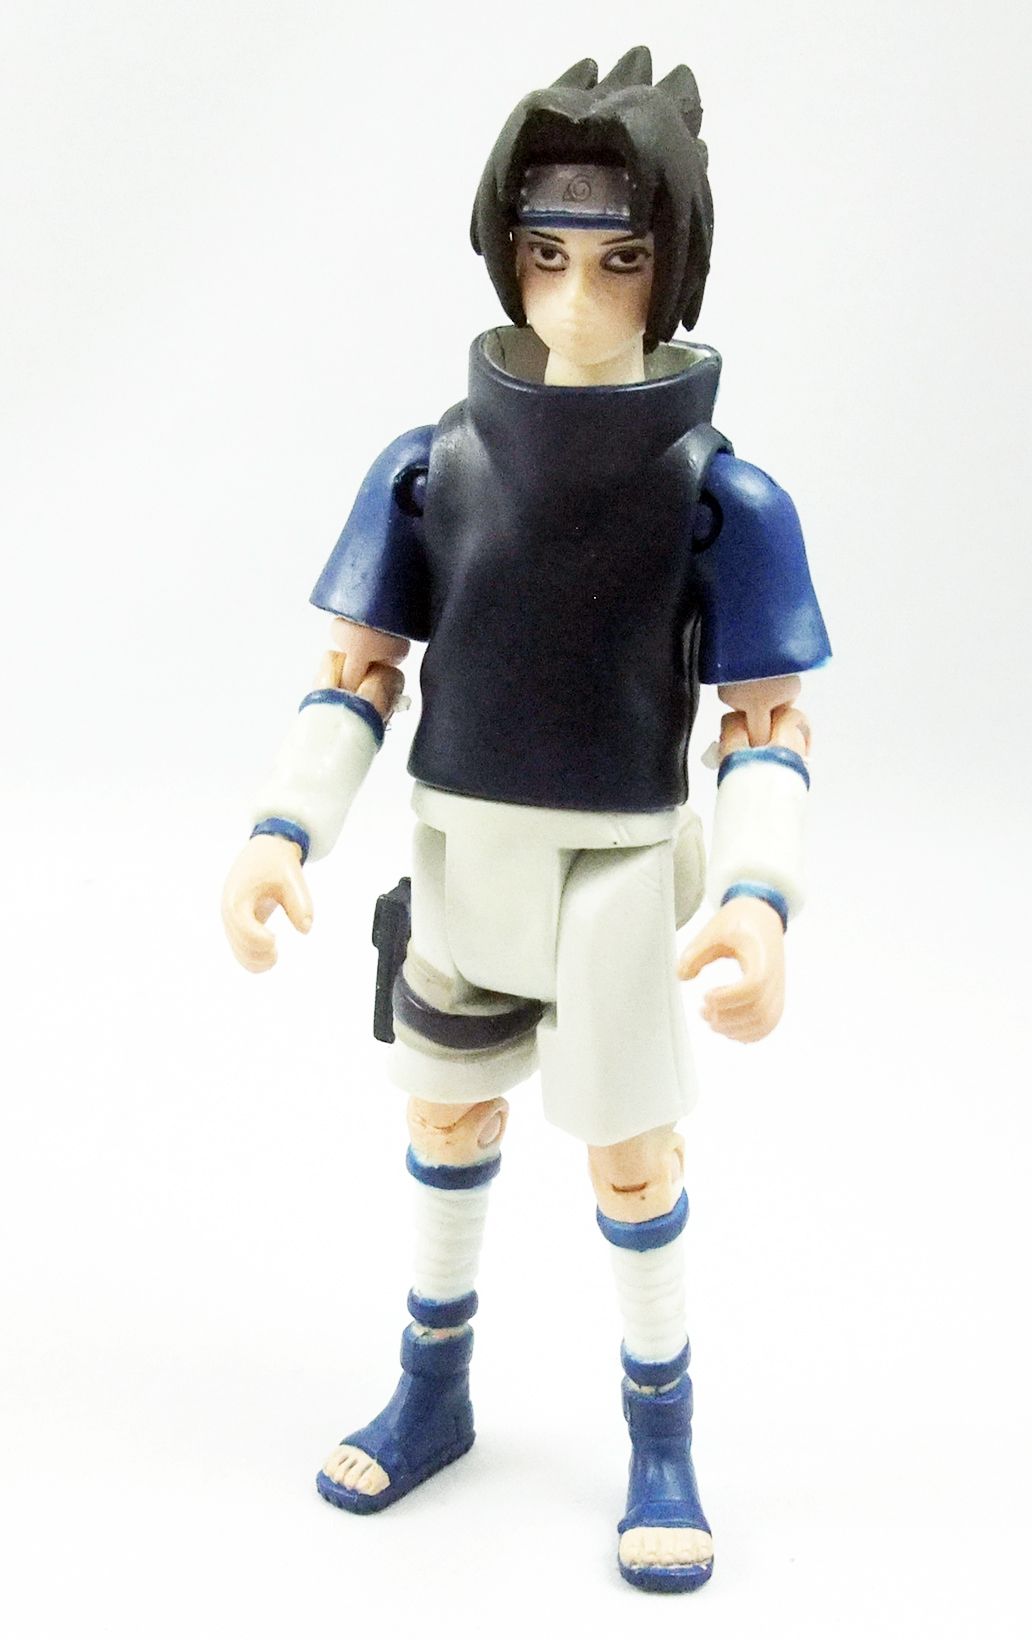 Naruto - Naruto   Mattel 4  Action Figure   Sasuke Huchiha  Loose  P Image 480987 GranDe